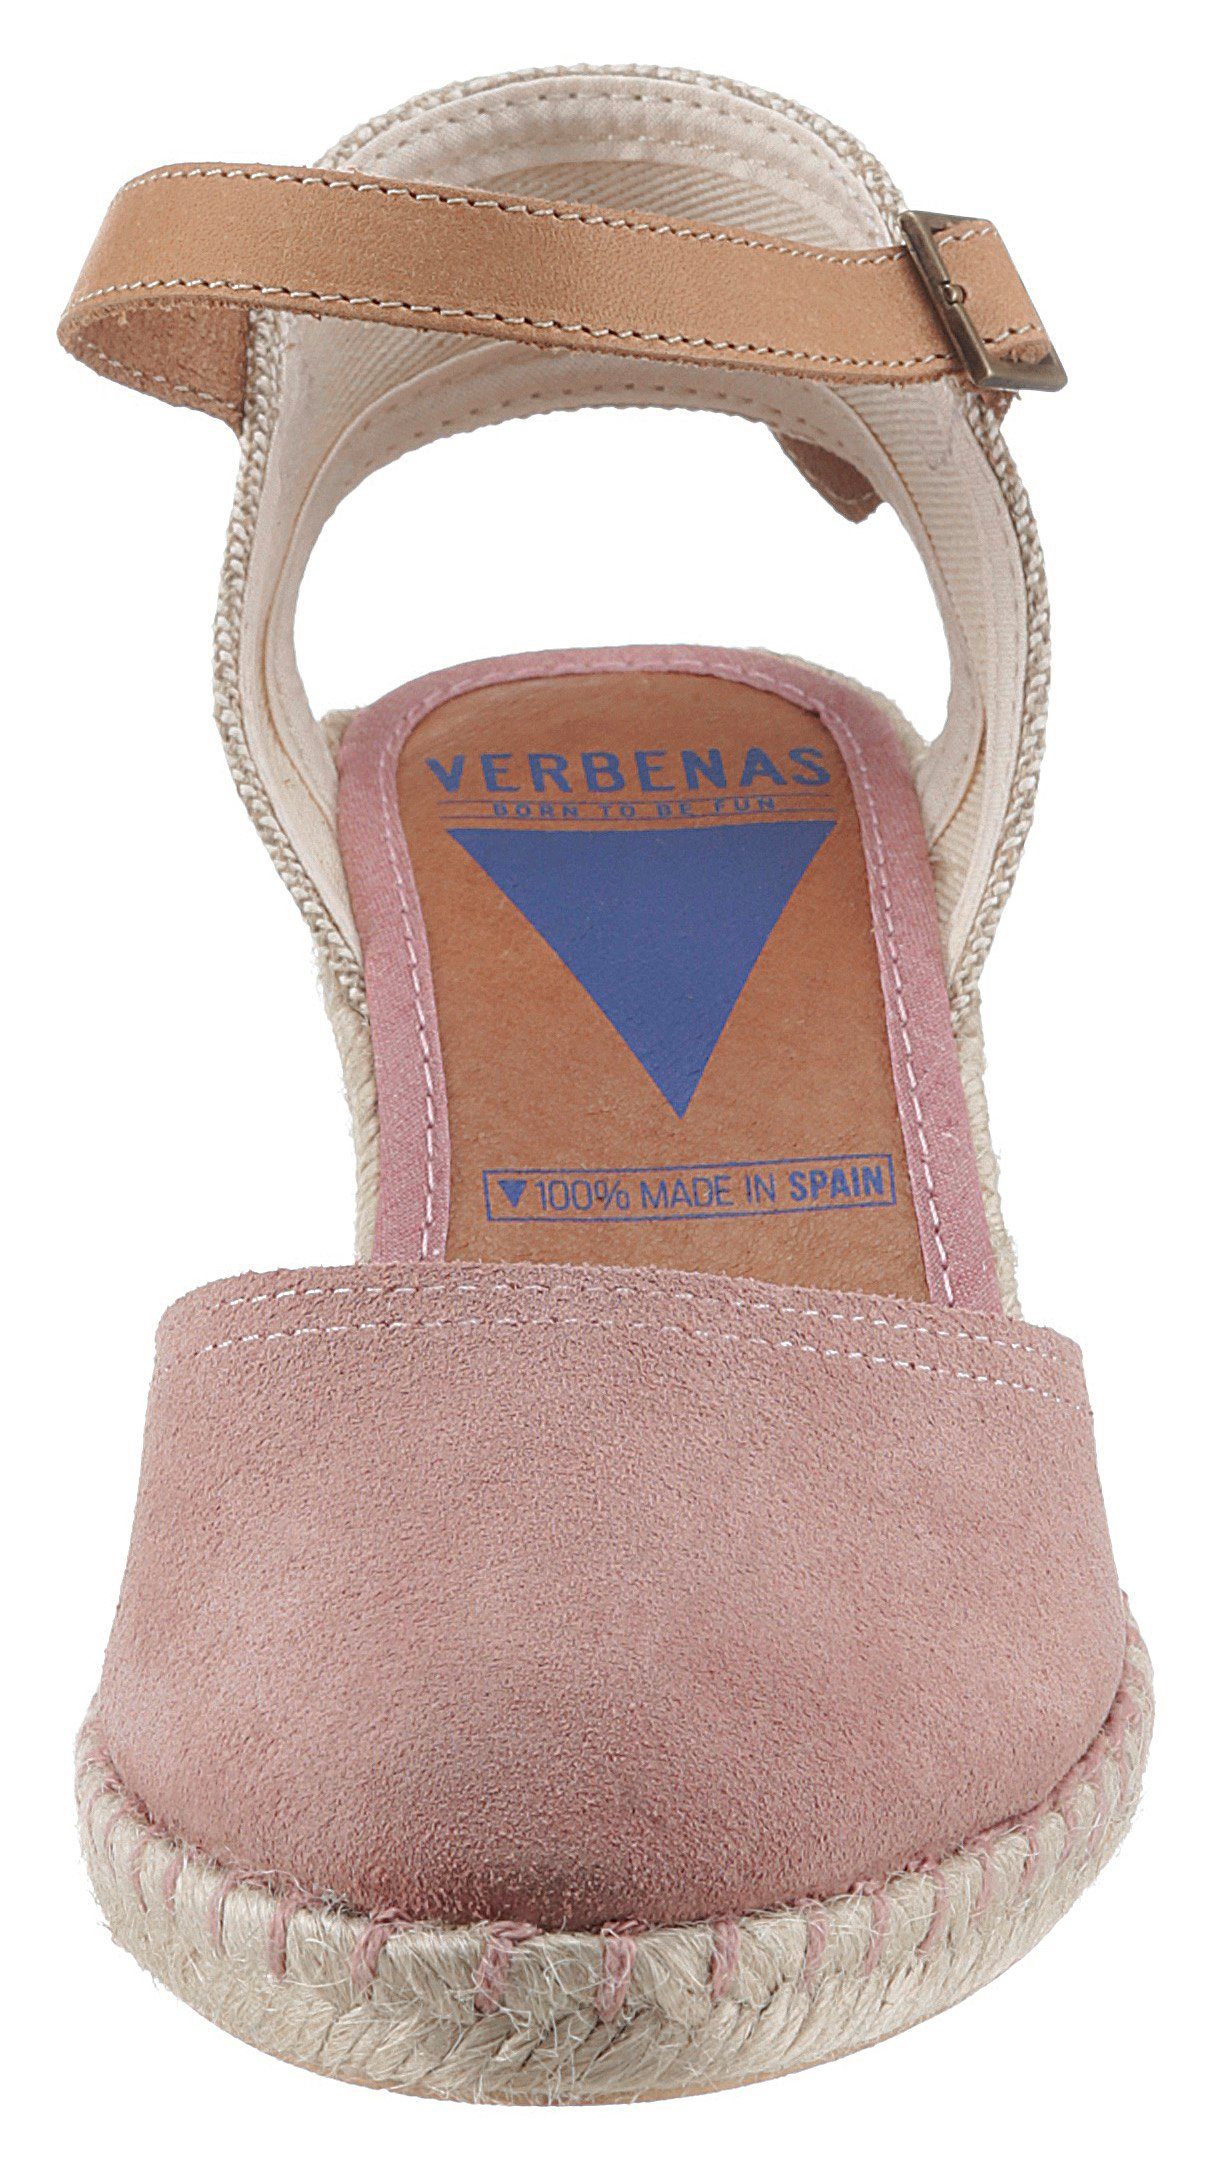 VERBENAS Sandalette mit altrosa bezogenem Keilabsatz Bast